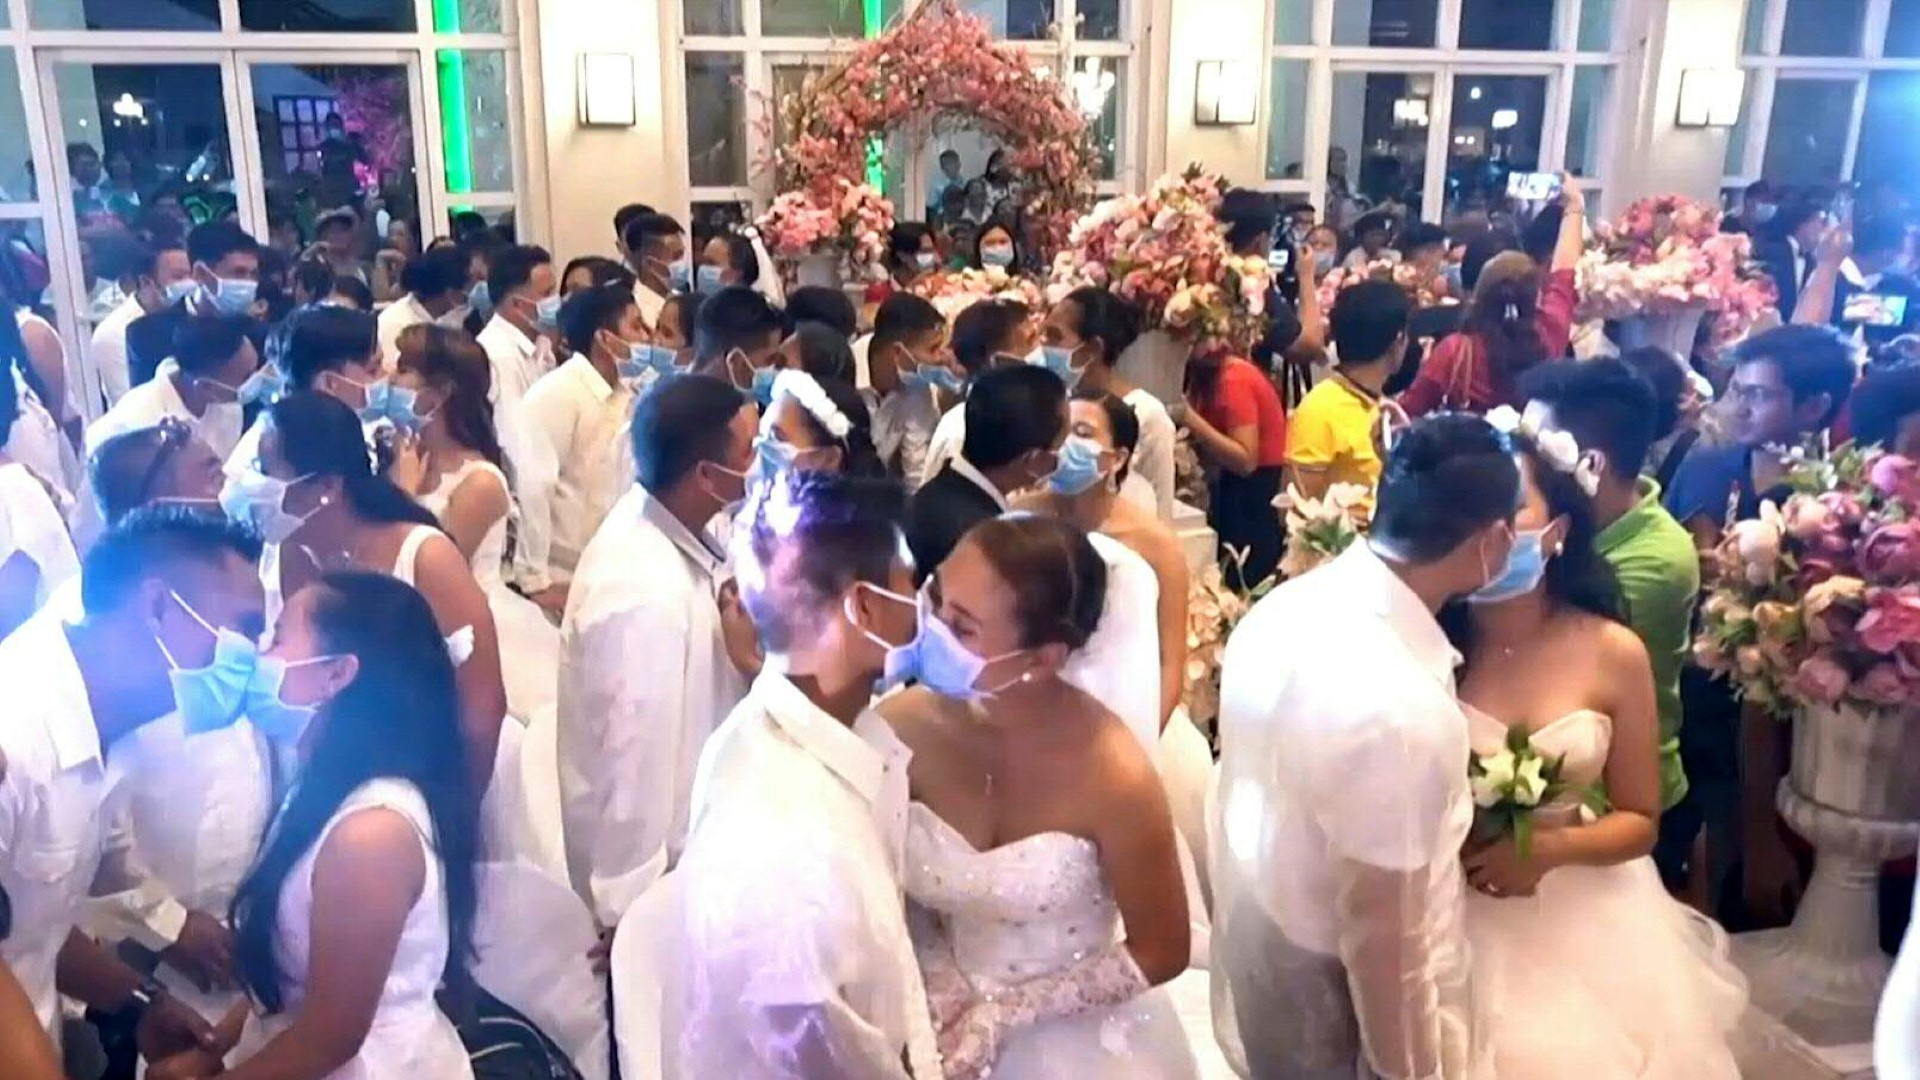 En medio de los temores al nuevo coronavirus, más de 200 parejas dieron el "sí quiero" en una boda masiva en Filipinas... todos cubiertos con mascarillas quirúrgicas.